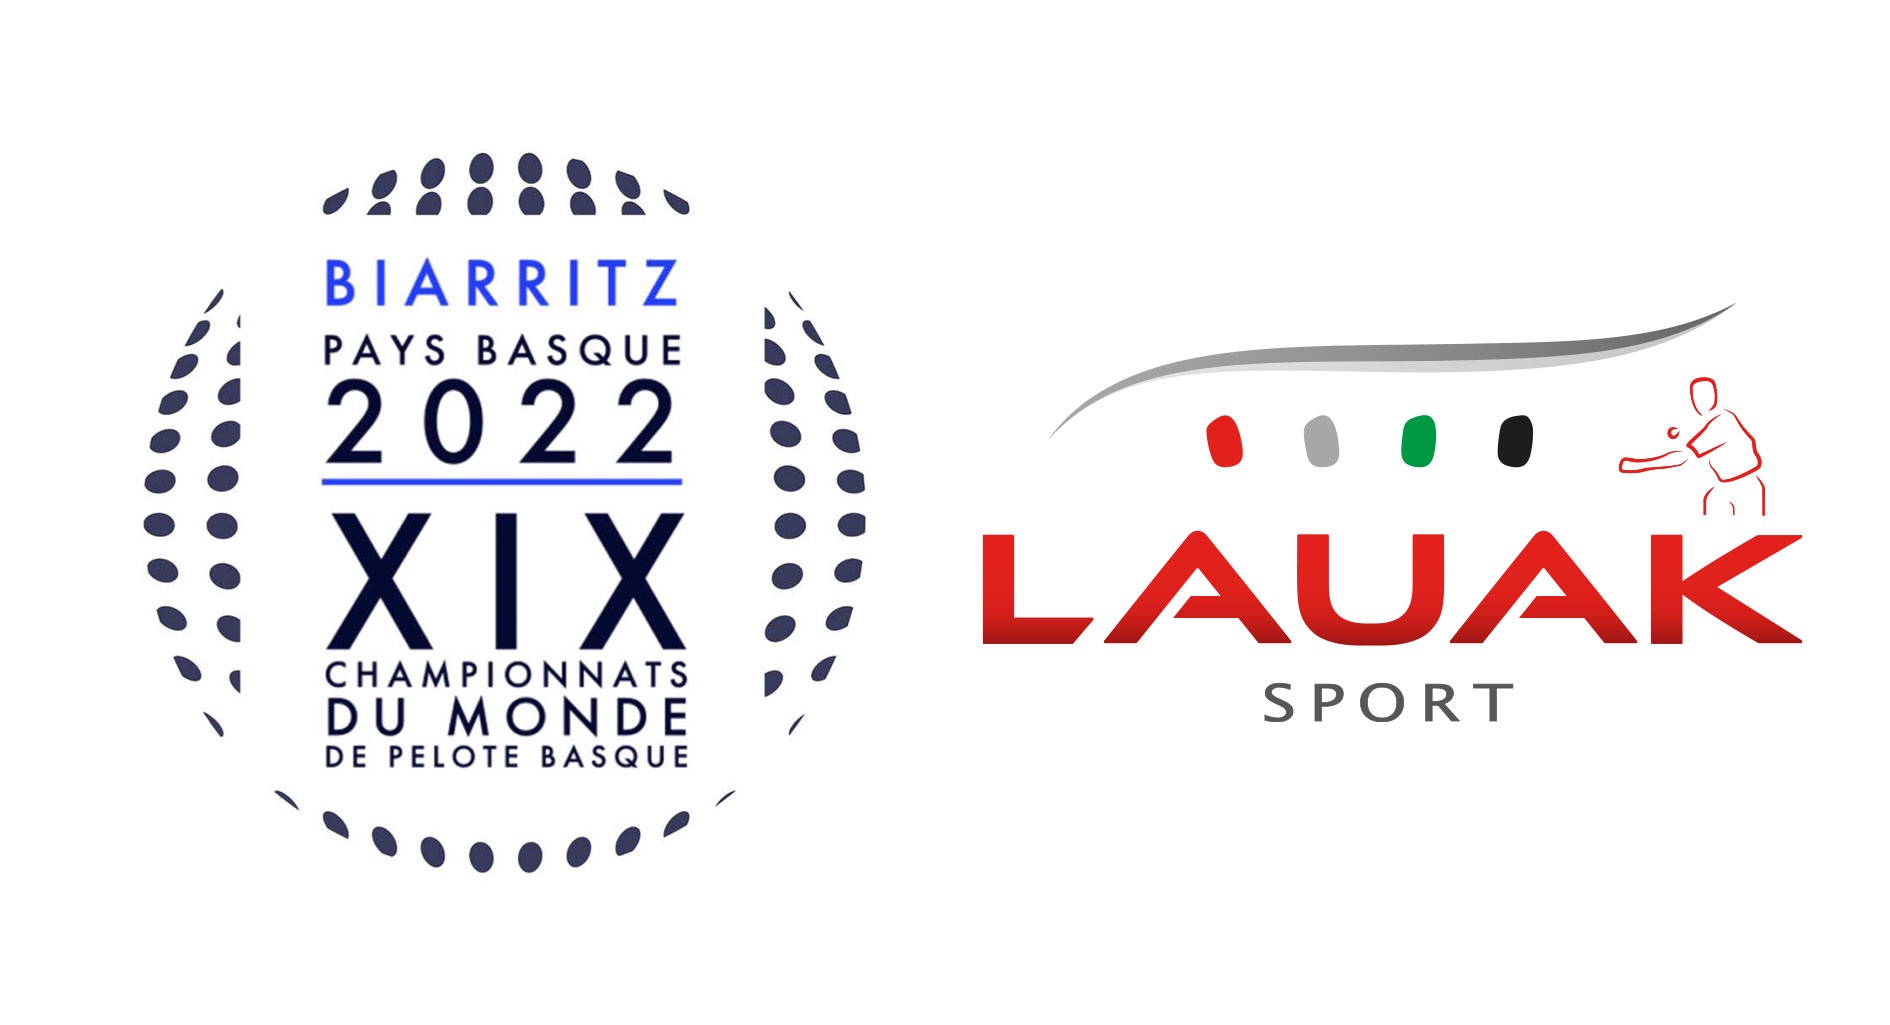 Partenaire majeur des Championnats du Monde de Pelote Basque 2022